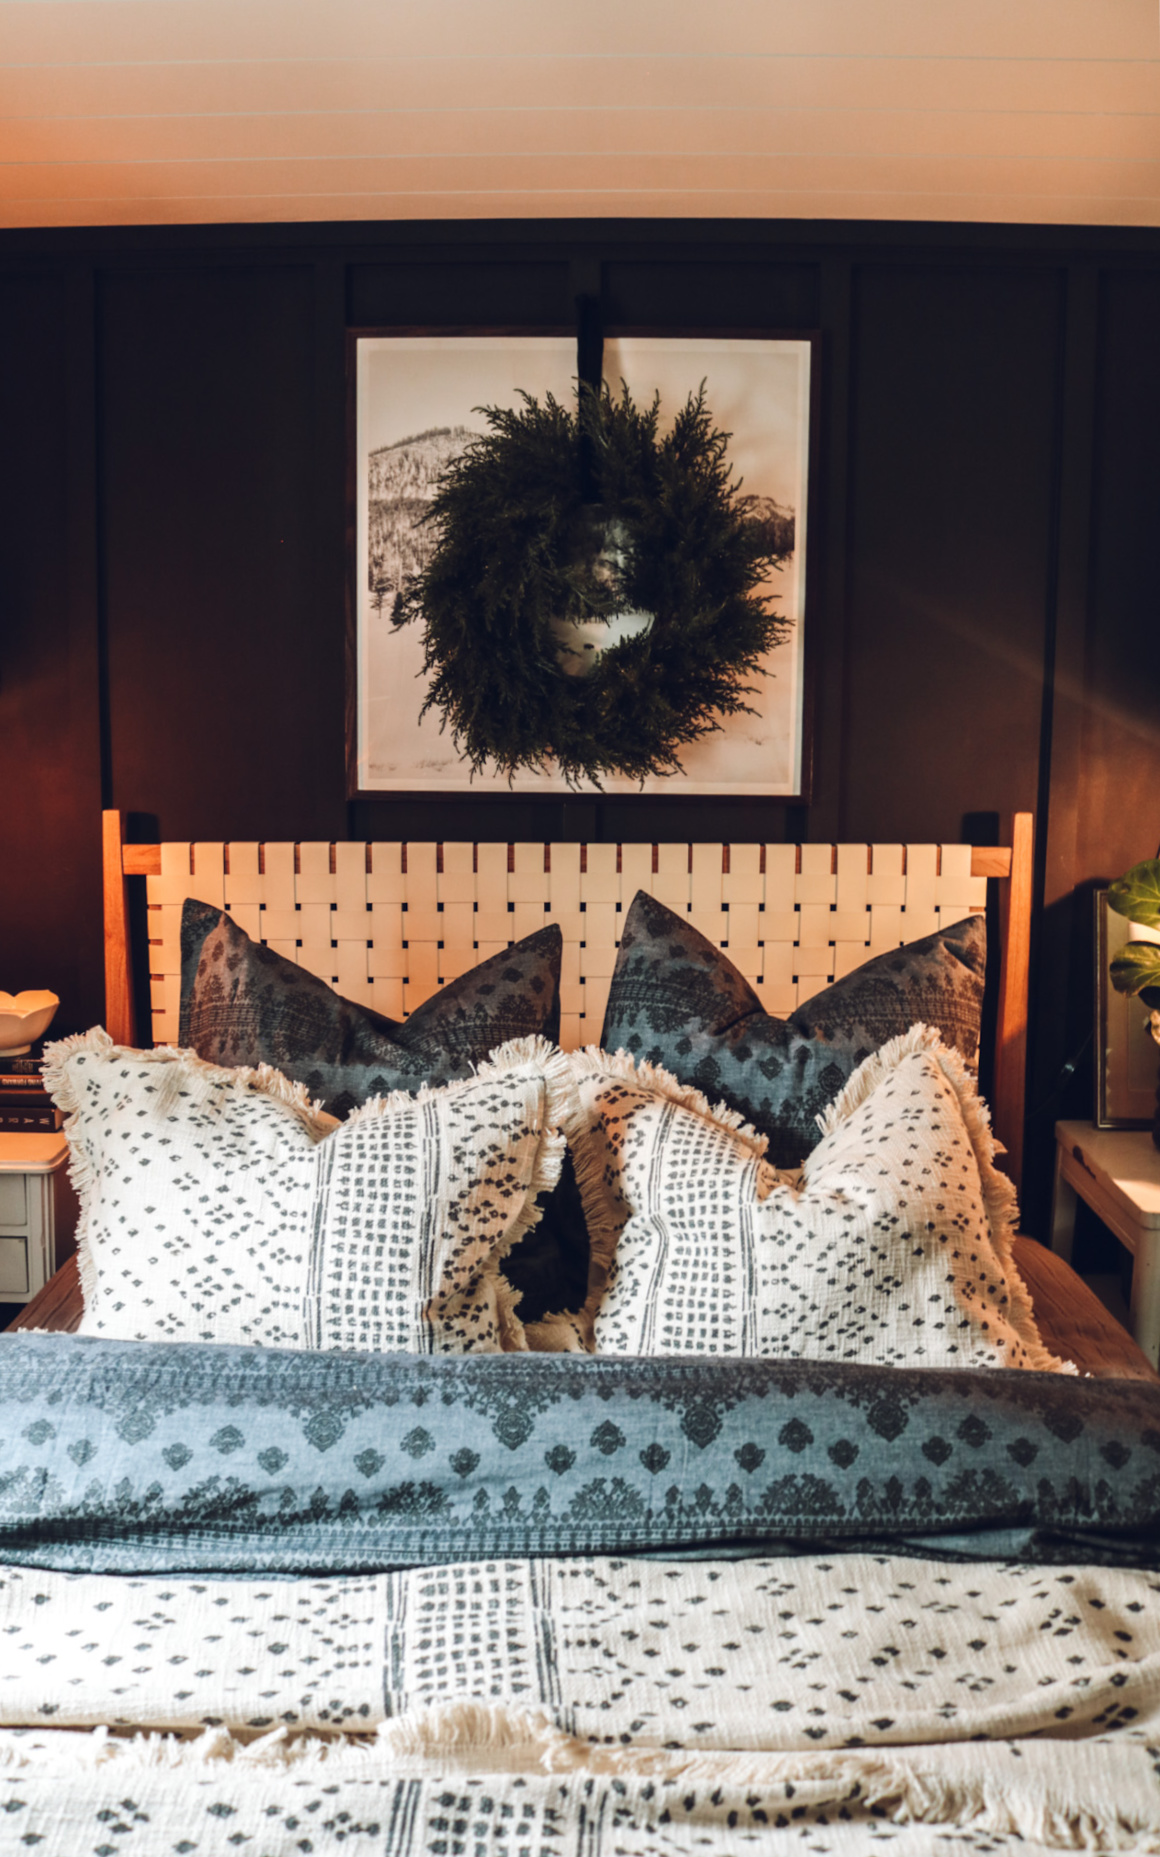 Winter is Coming…get the Bedroom Cozy! Cozy winter bedroom